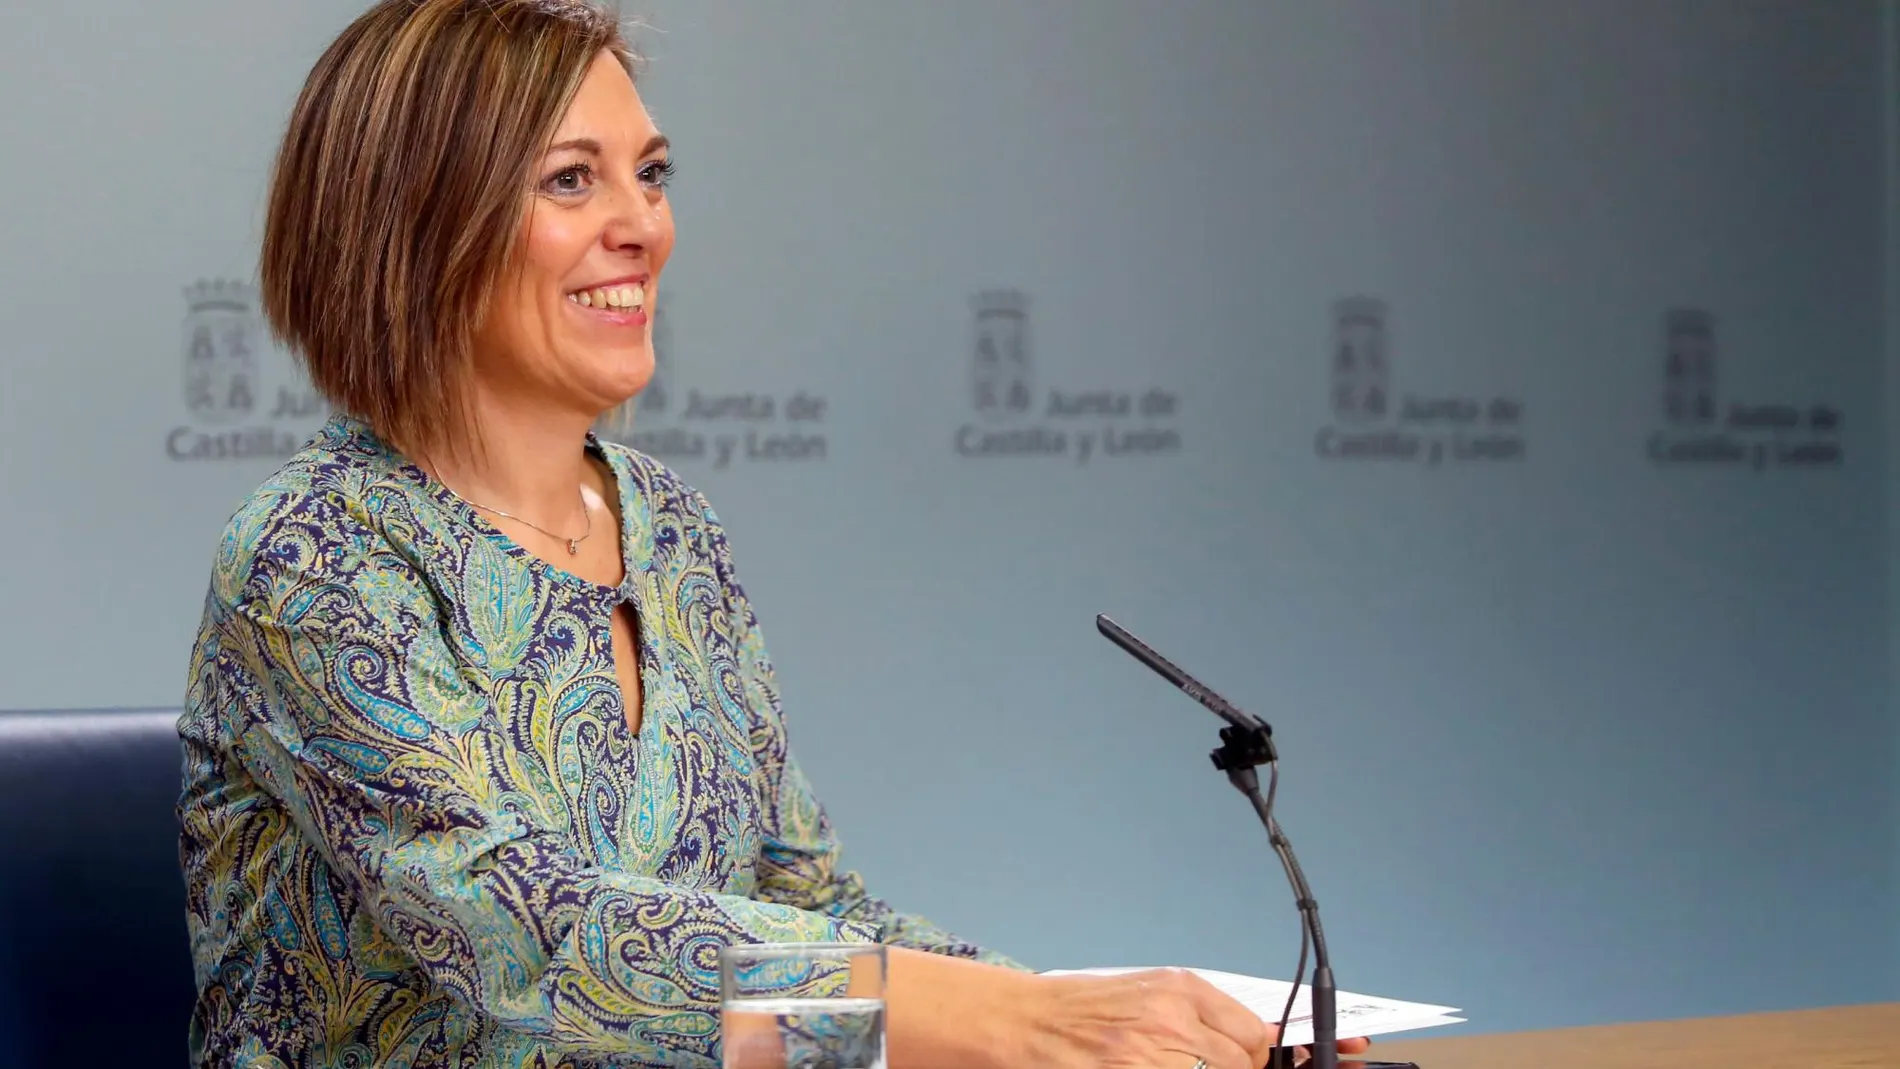 La consejera de Agricultura y portavoz de la Junta, Milagros Marcos, explica los acuerdos aprobados en el Consejo de Gobierno de Castilla y León